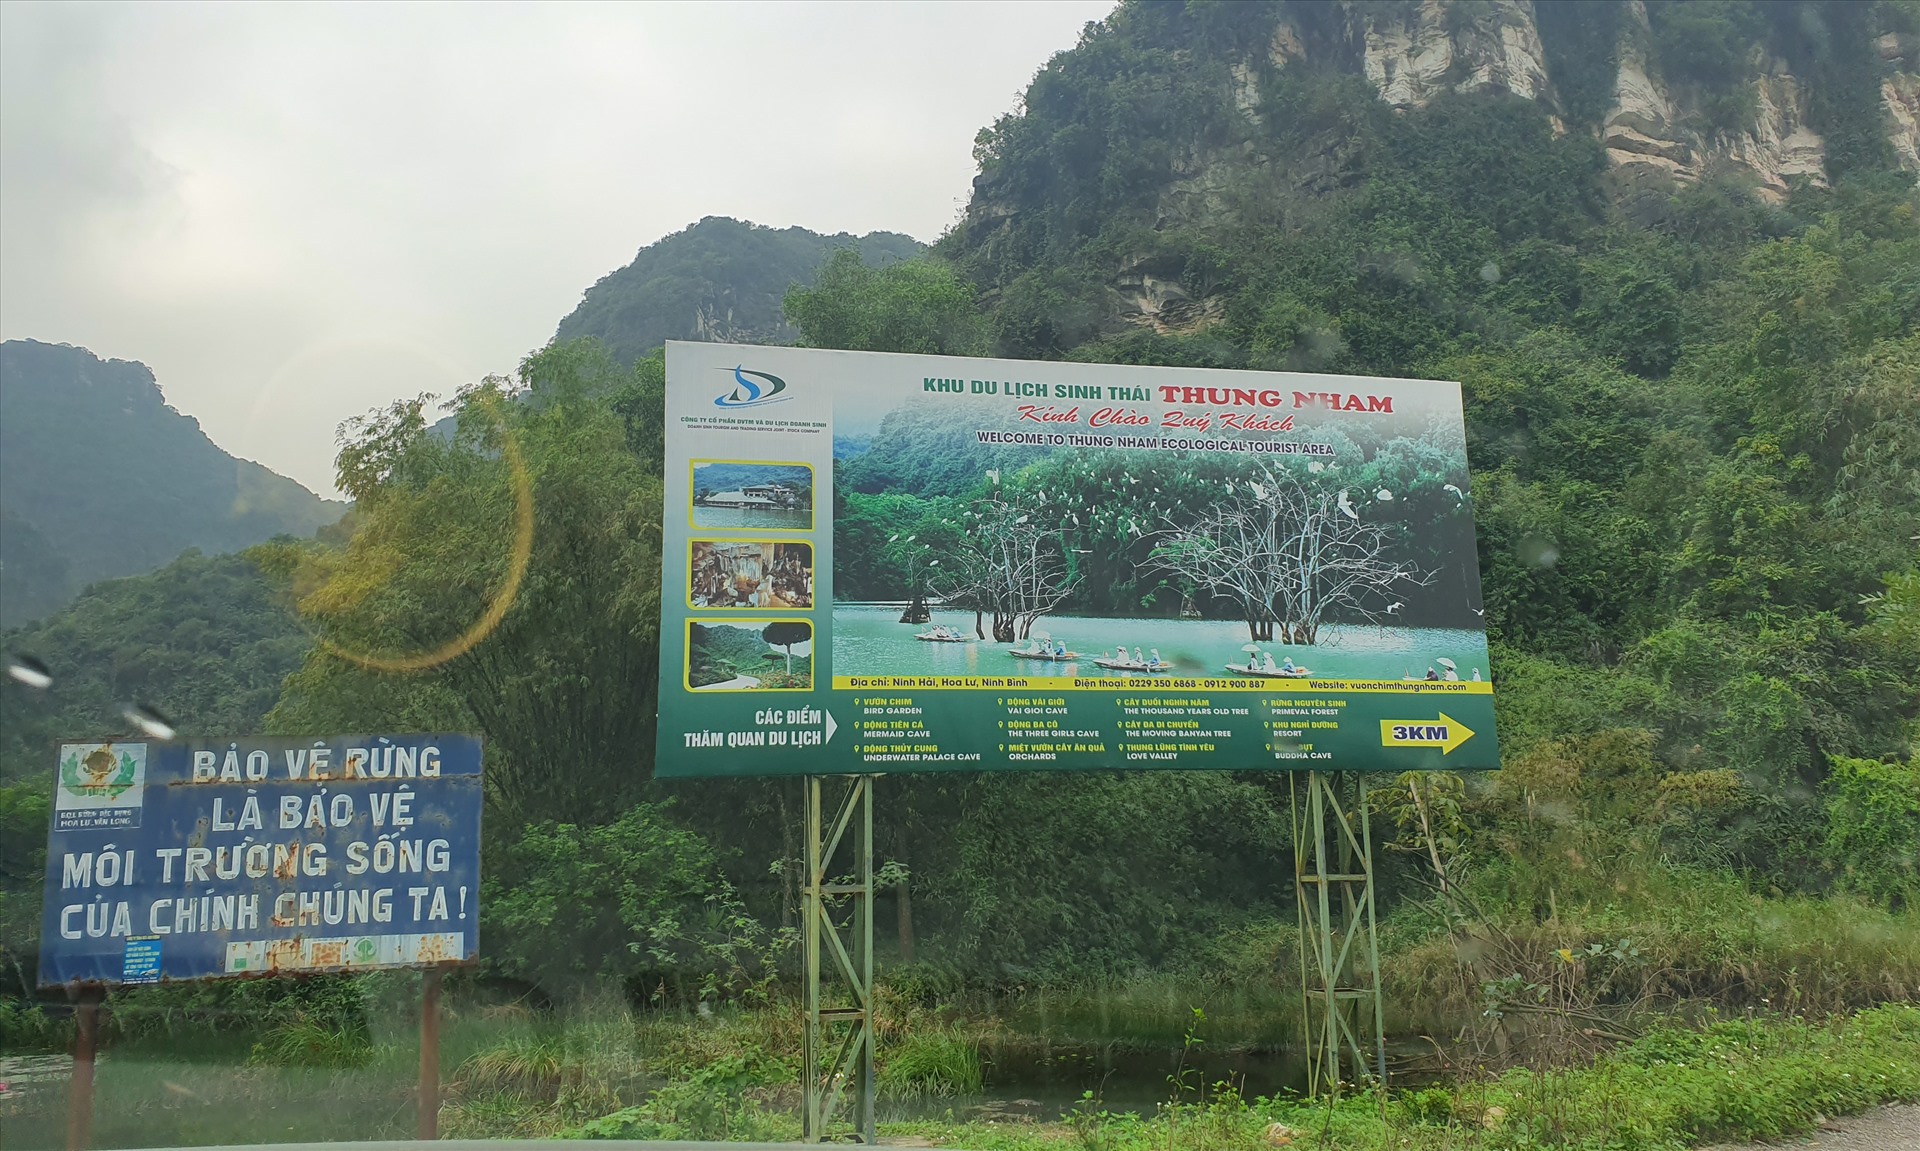 Khu du lịch sinh thái Thung Nham nằm giữa vùng lõi di sản Tràng An. Tại khu du lịch sinh thái này đang xây dựng các công trình vi phạm trật tự xây dựng.